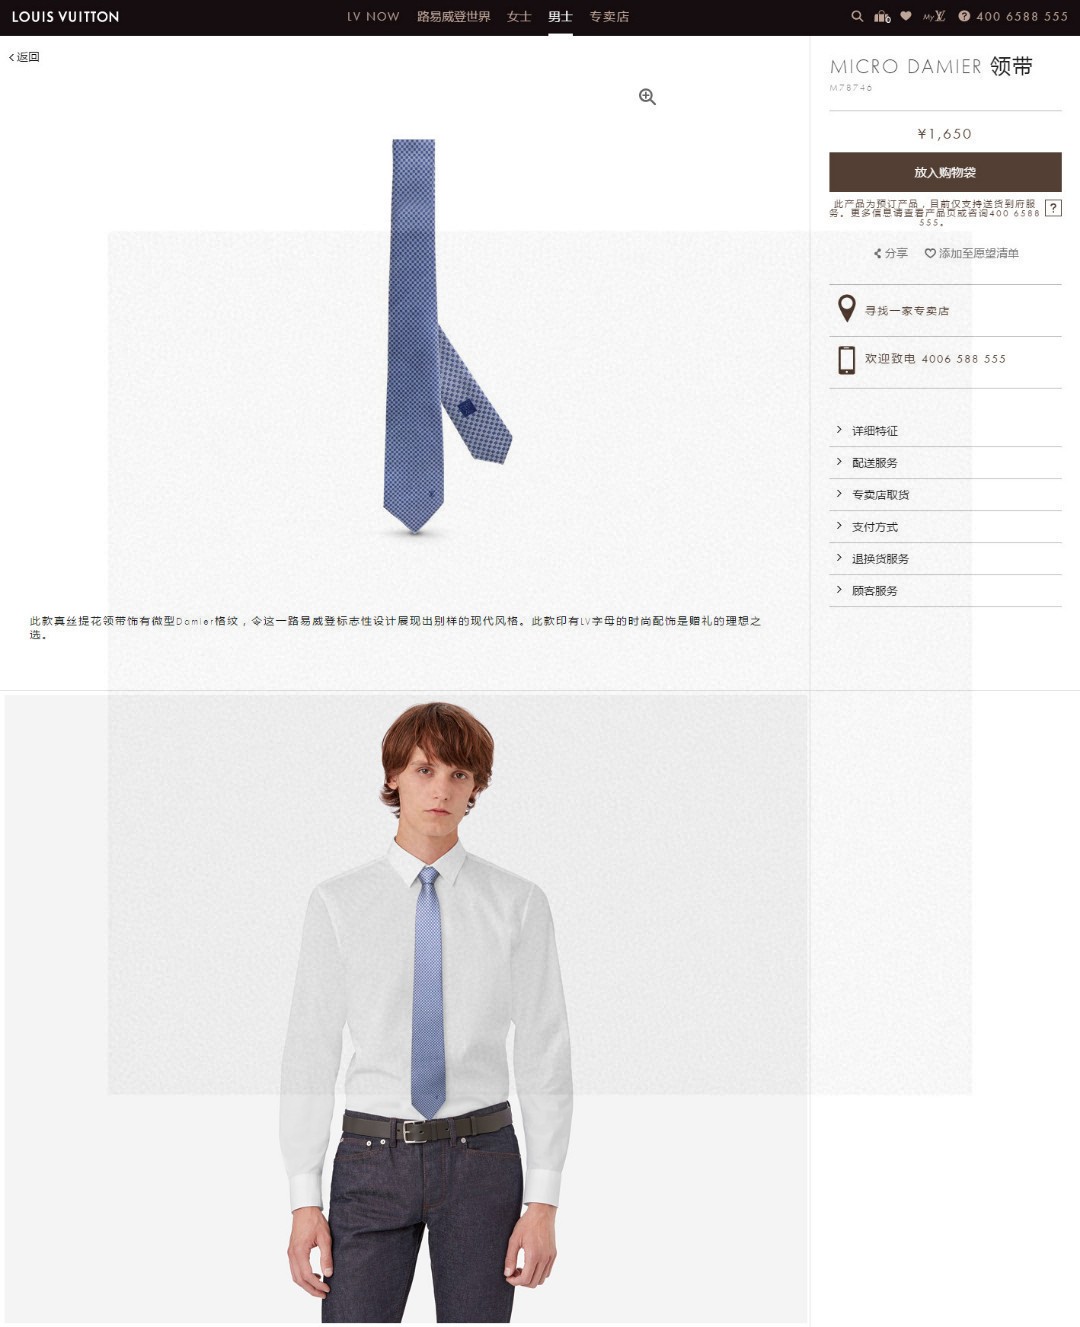 专柜同步男士领带系列L方格领带稀有展现精湛手工与时尚优雅的理想选择这款领带将标志性的Damier图案以同